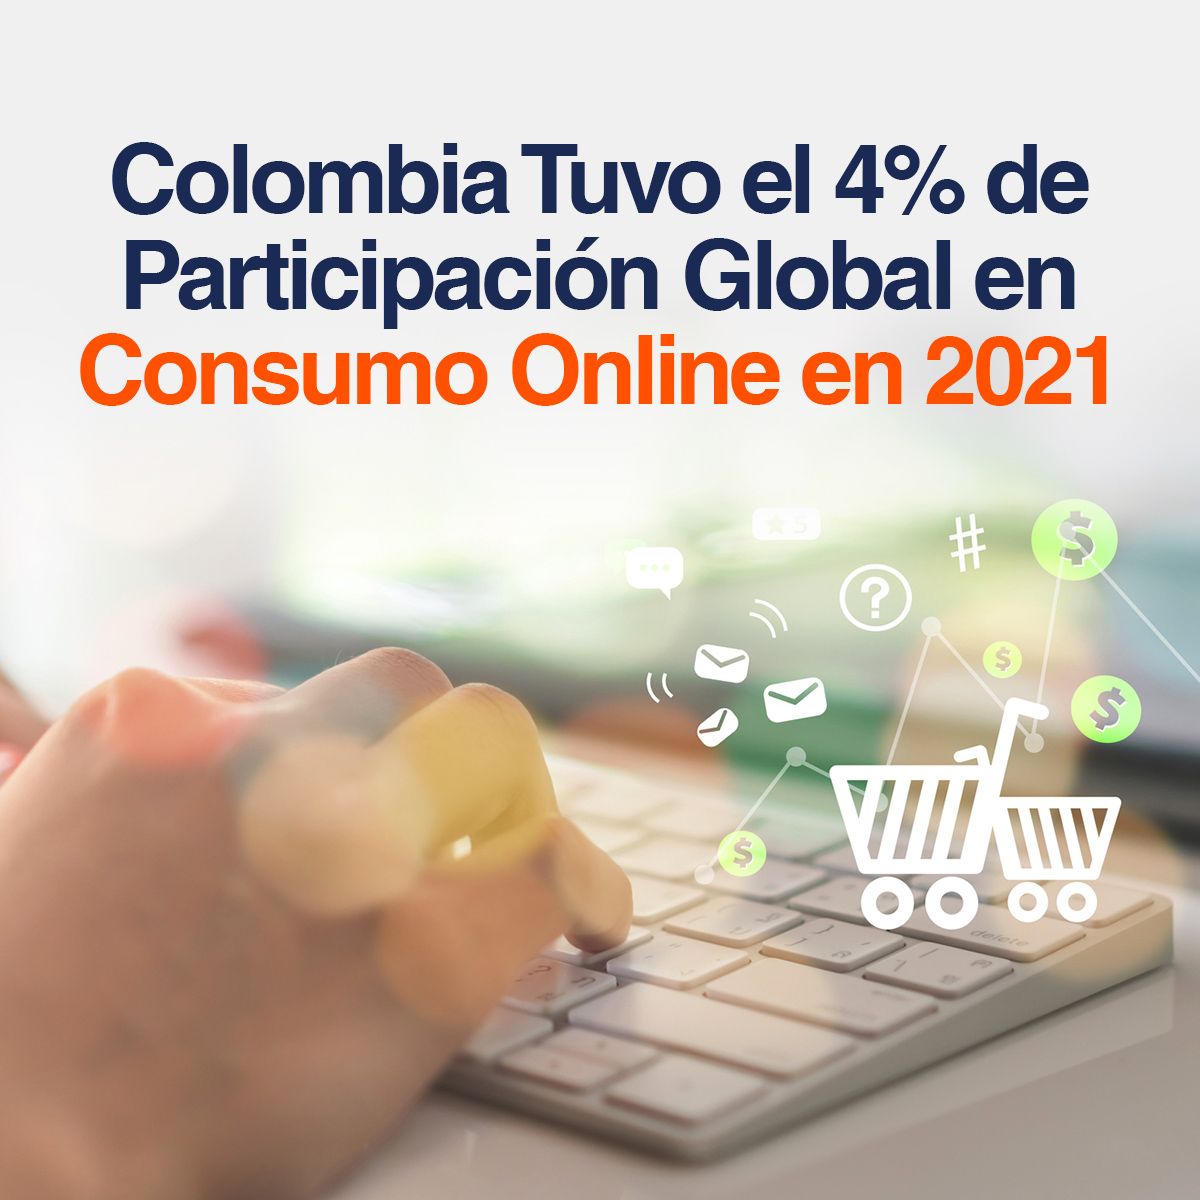 Colombia Tuvo el 4% de Participación Global en Consumo Online en 2021